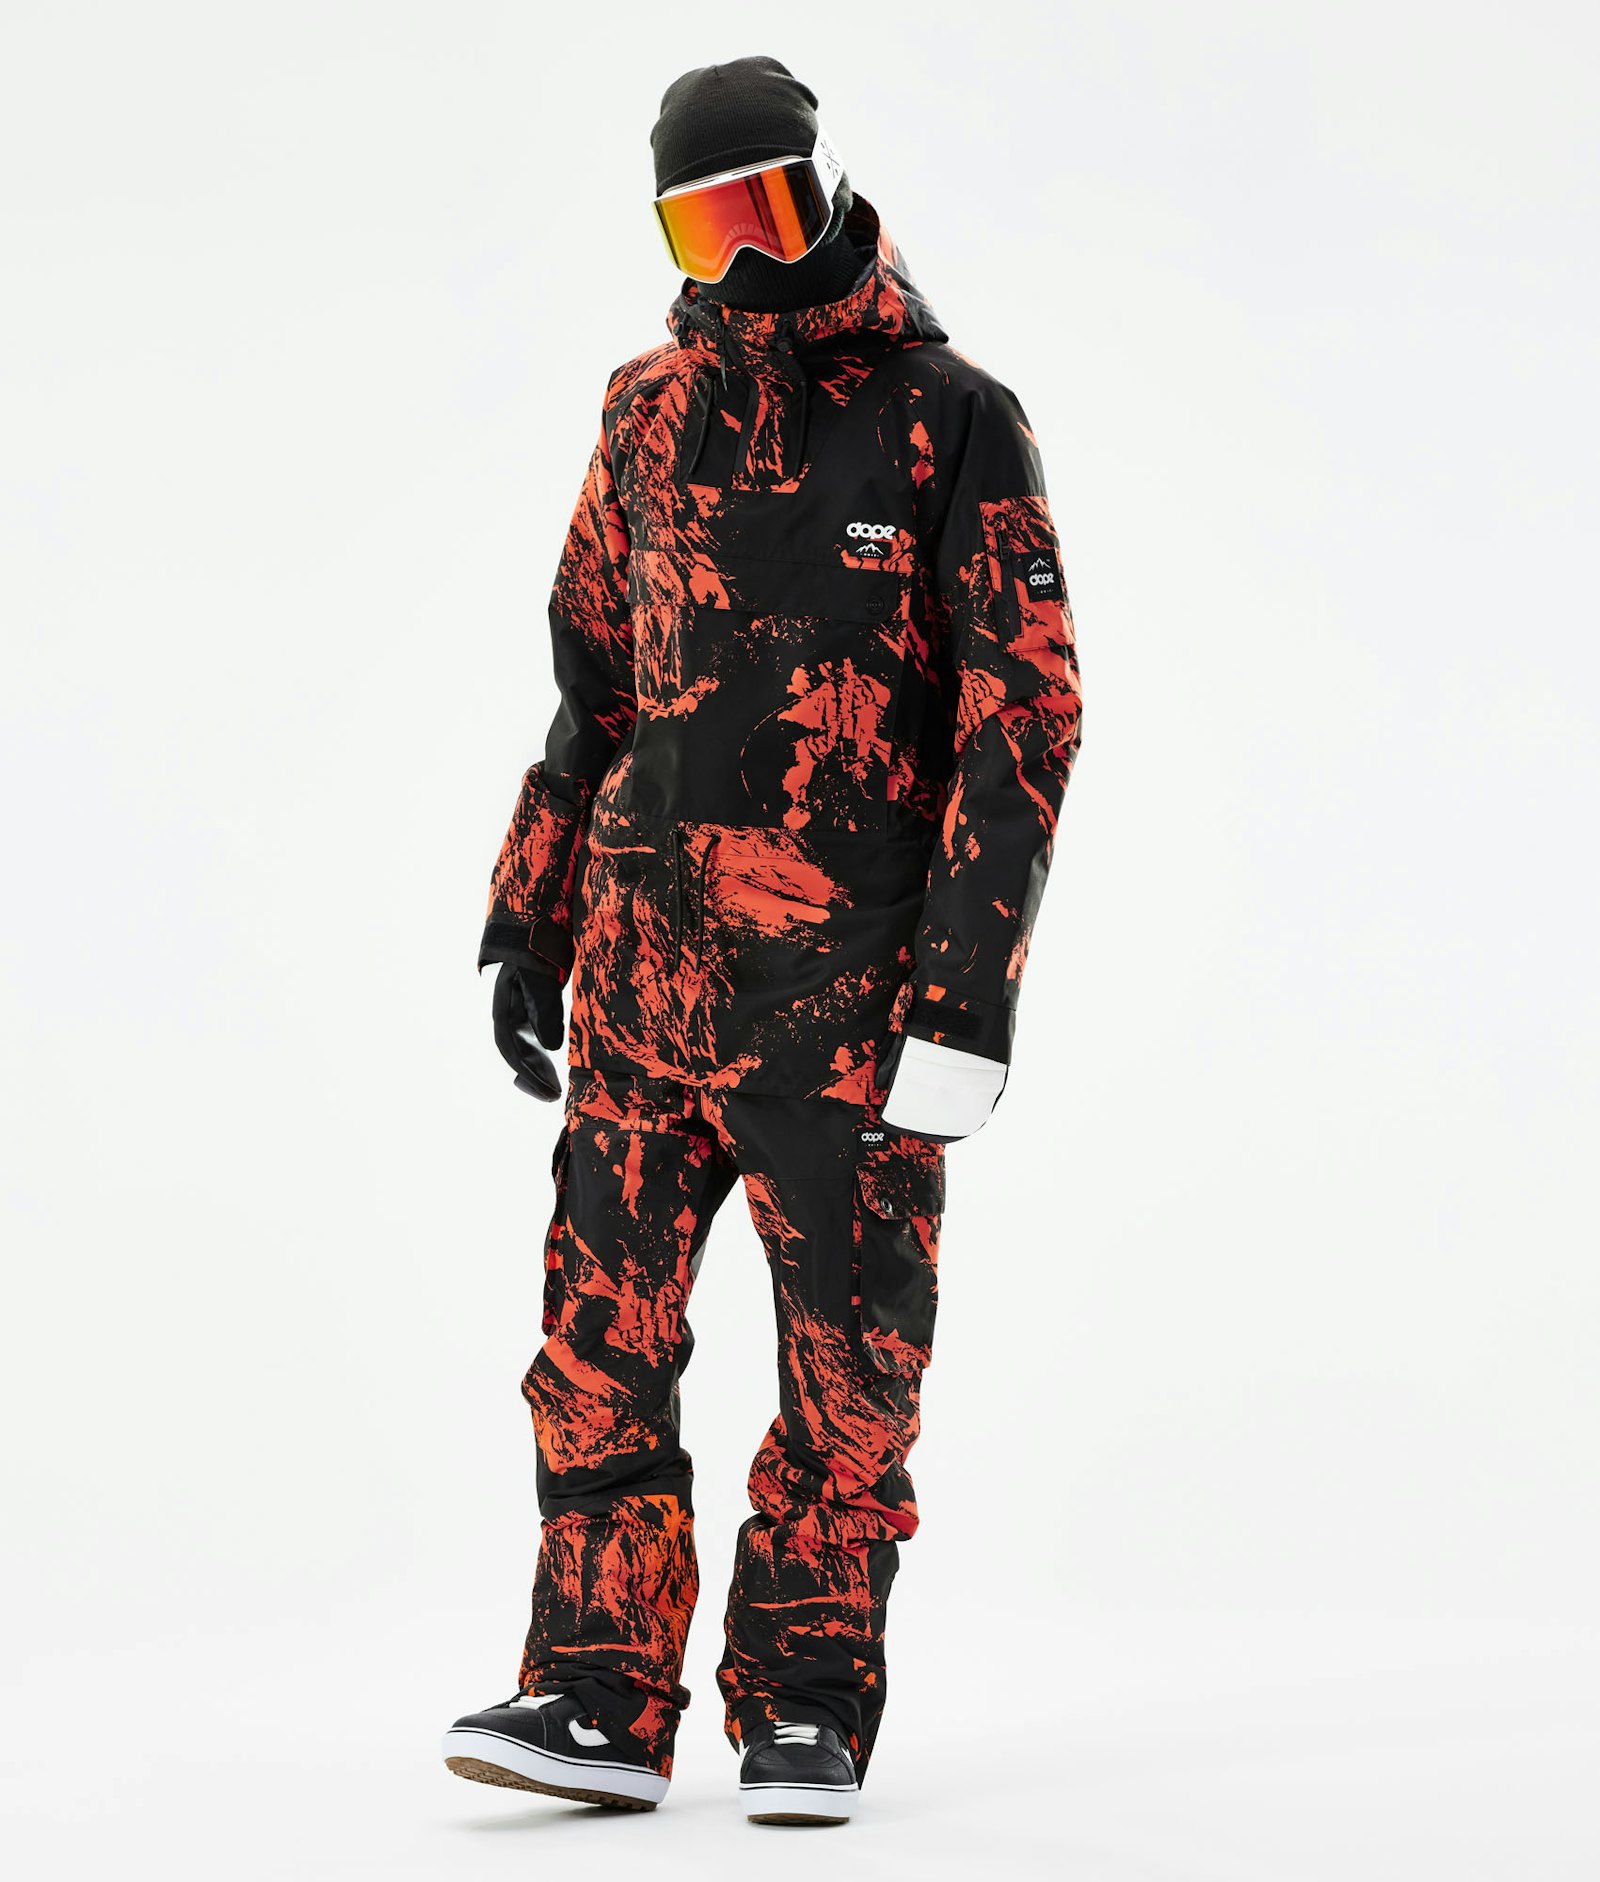 Annok 2021 Snowboardjacke Herren Paint Orange